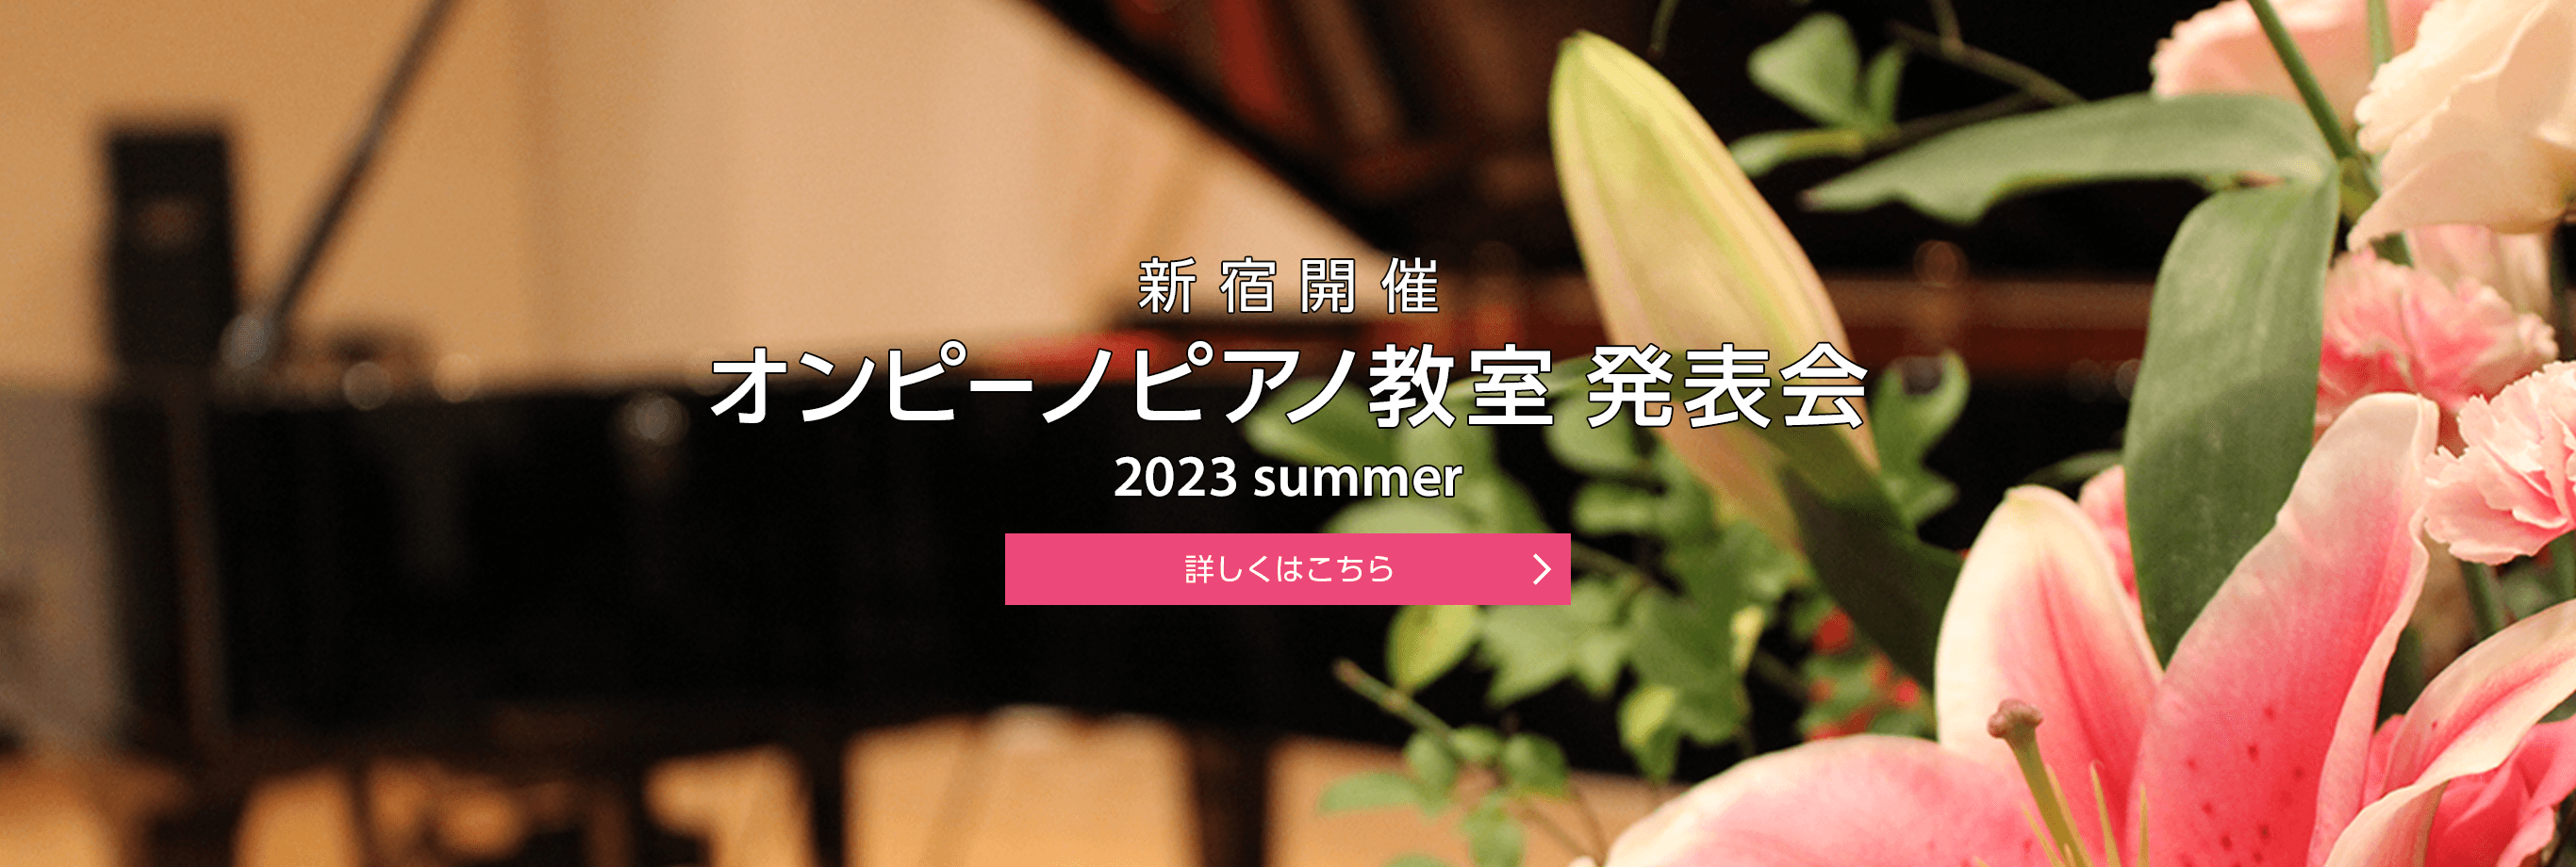 新宿開催 オンピーノピアノ教室 発表会 2023 summer 詳しくはこちら